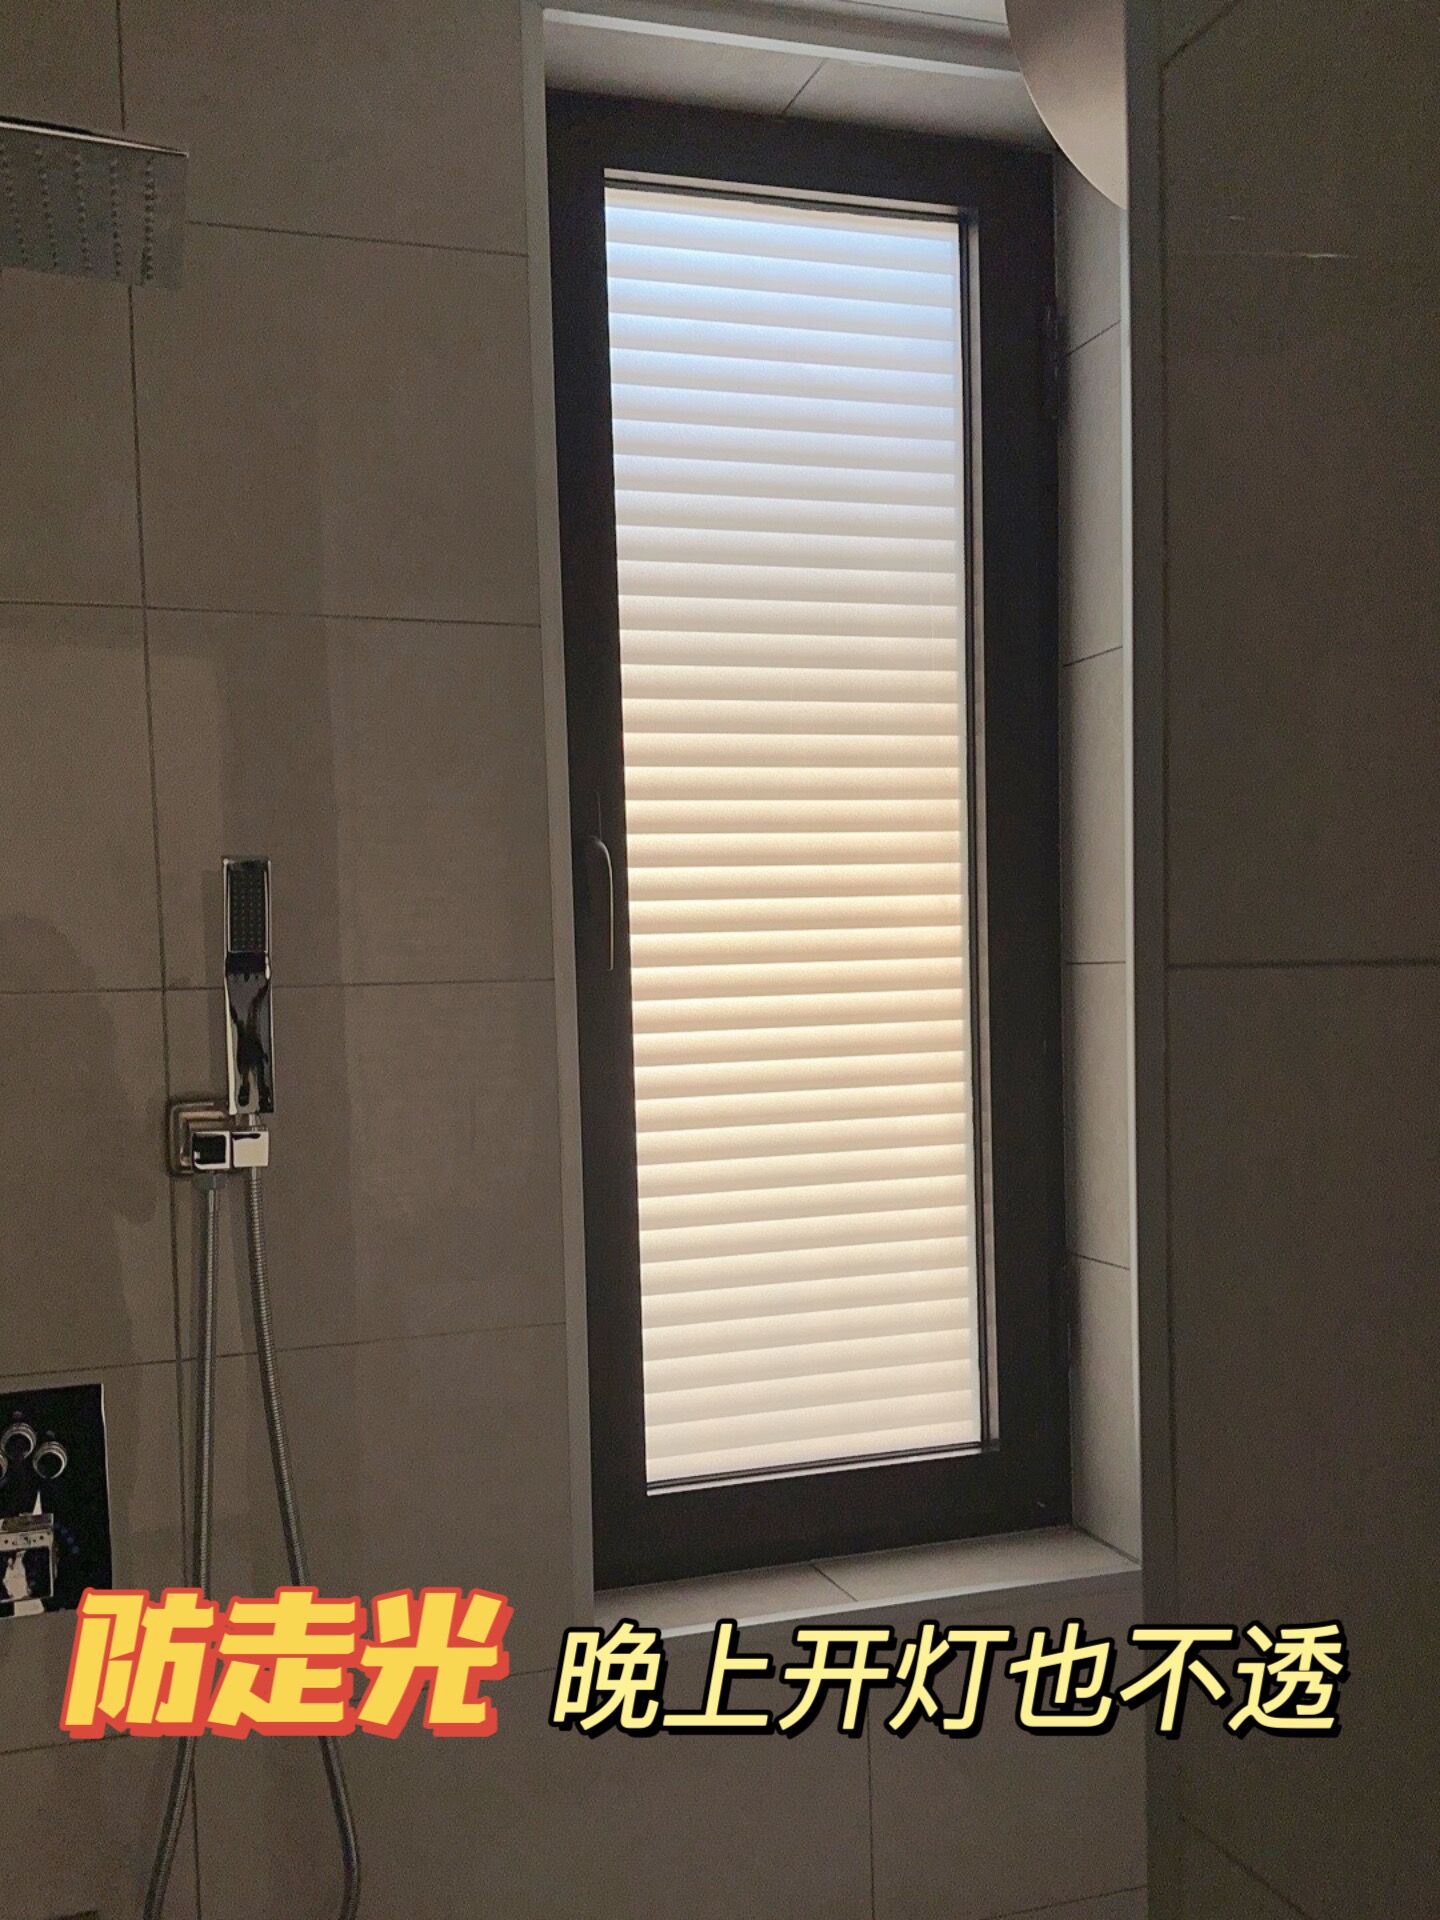 防走光!有手就能貼!衛生間浴室廁所貼紙百葉窗戶磨砂防窺玻璃貼膜